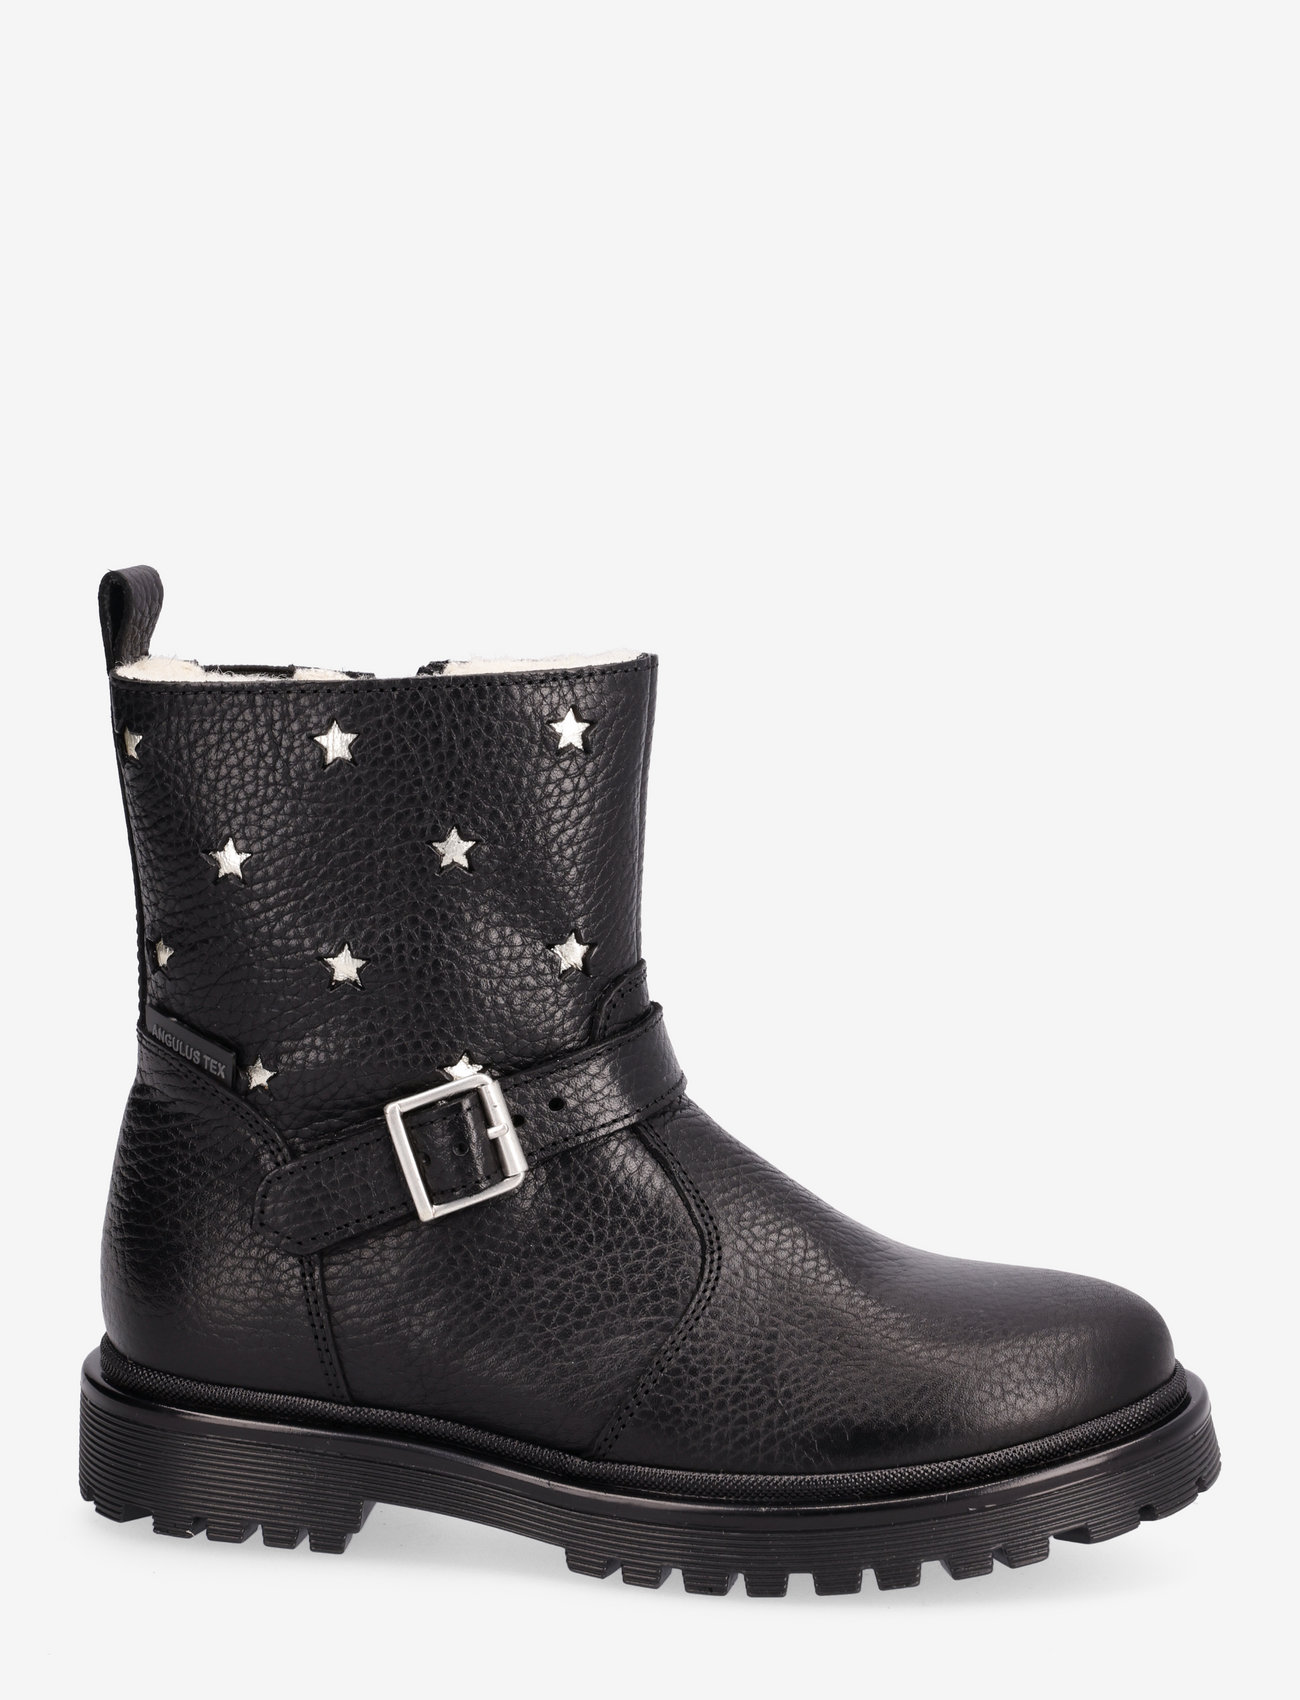 ANGULUS - Boots - flat - with zipper - dzieci - 2504/1325/1604/001 black/champ - 1